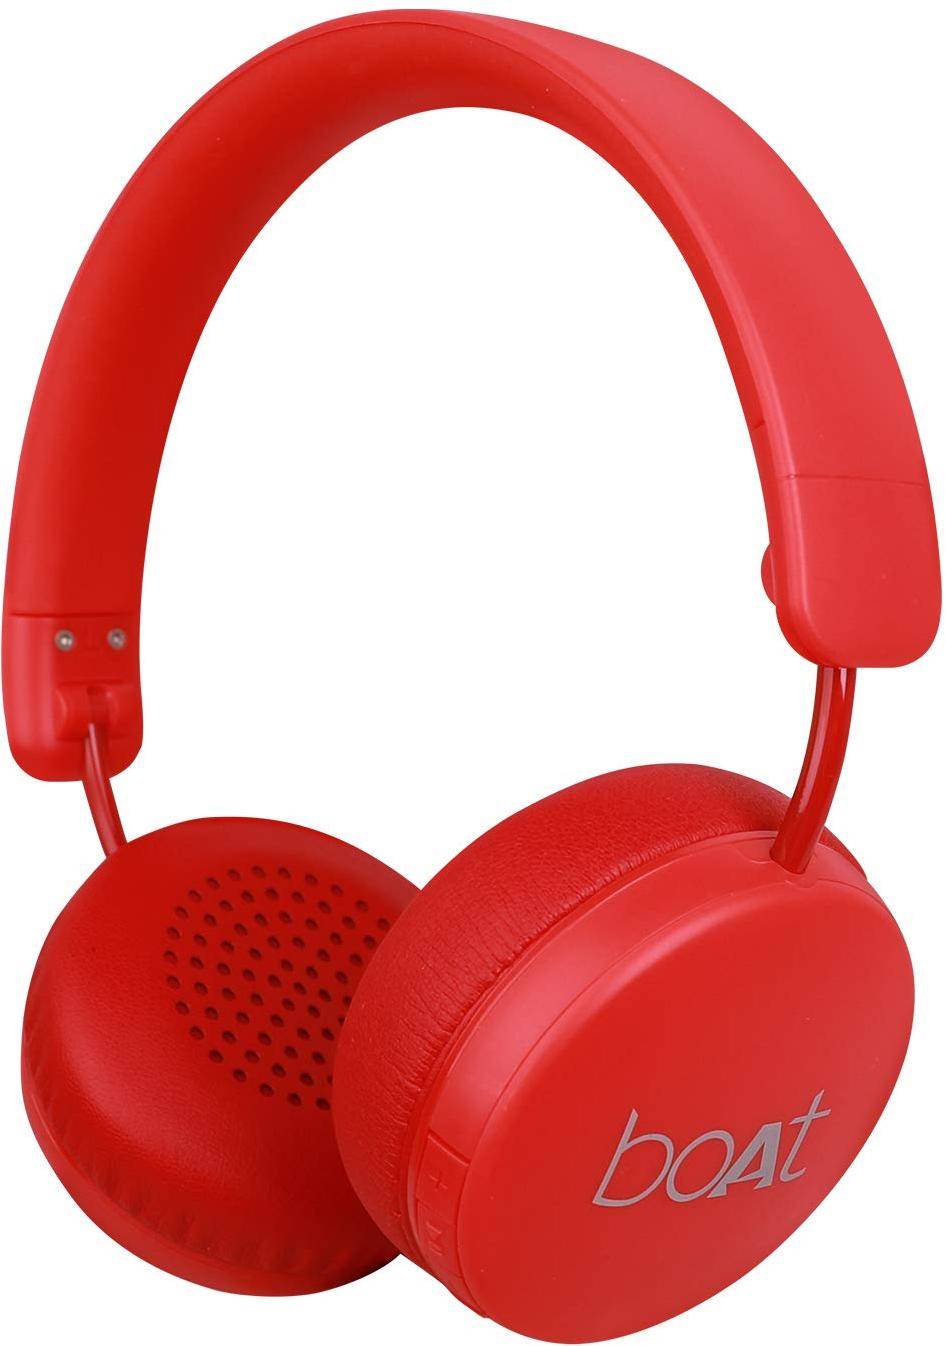 boAt RockerZ 440 Bluetooth Headset zoom image